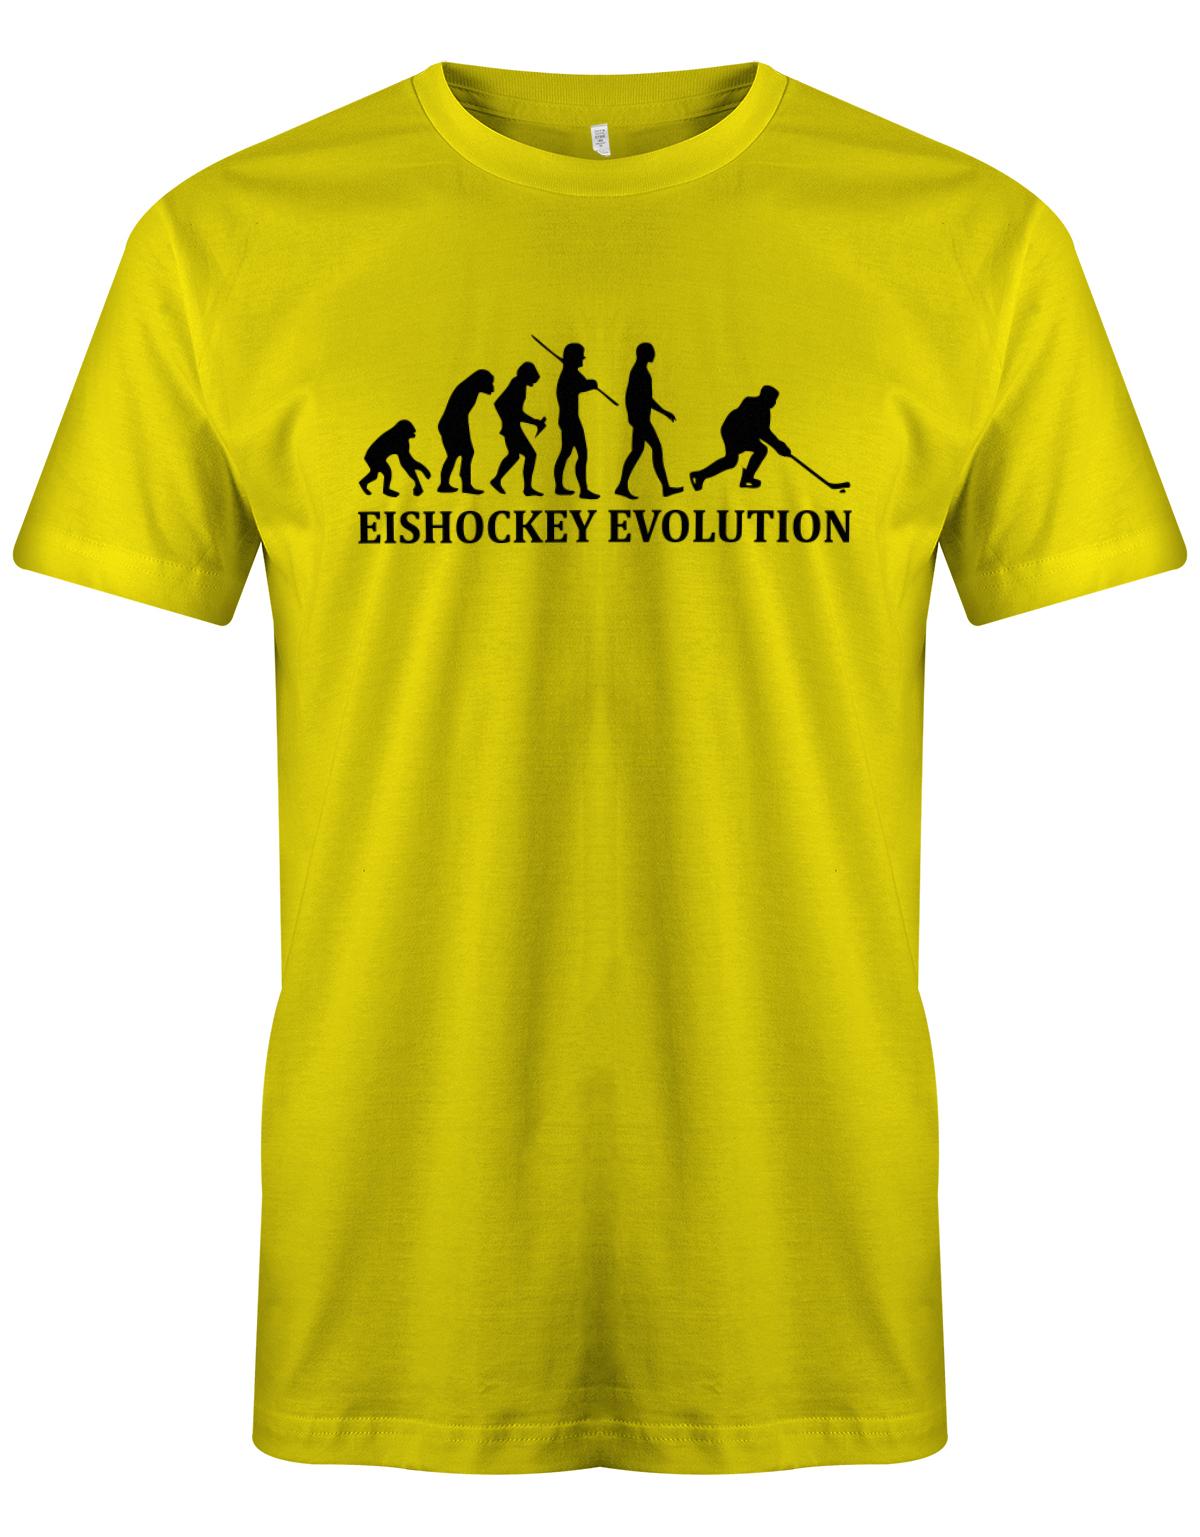 Eishockey-Evolution-Herren-Shirt-Gelb